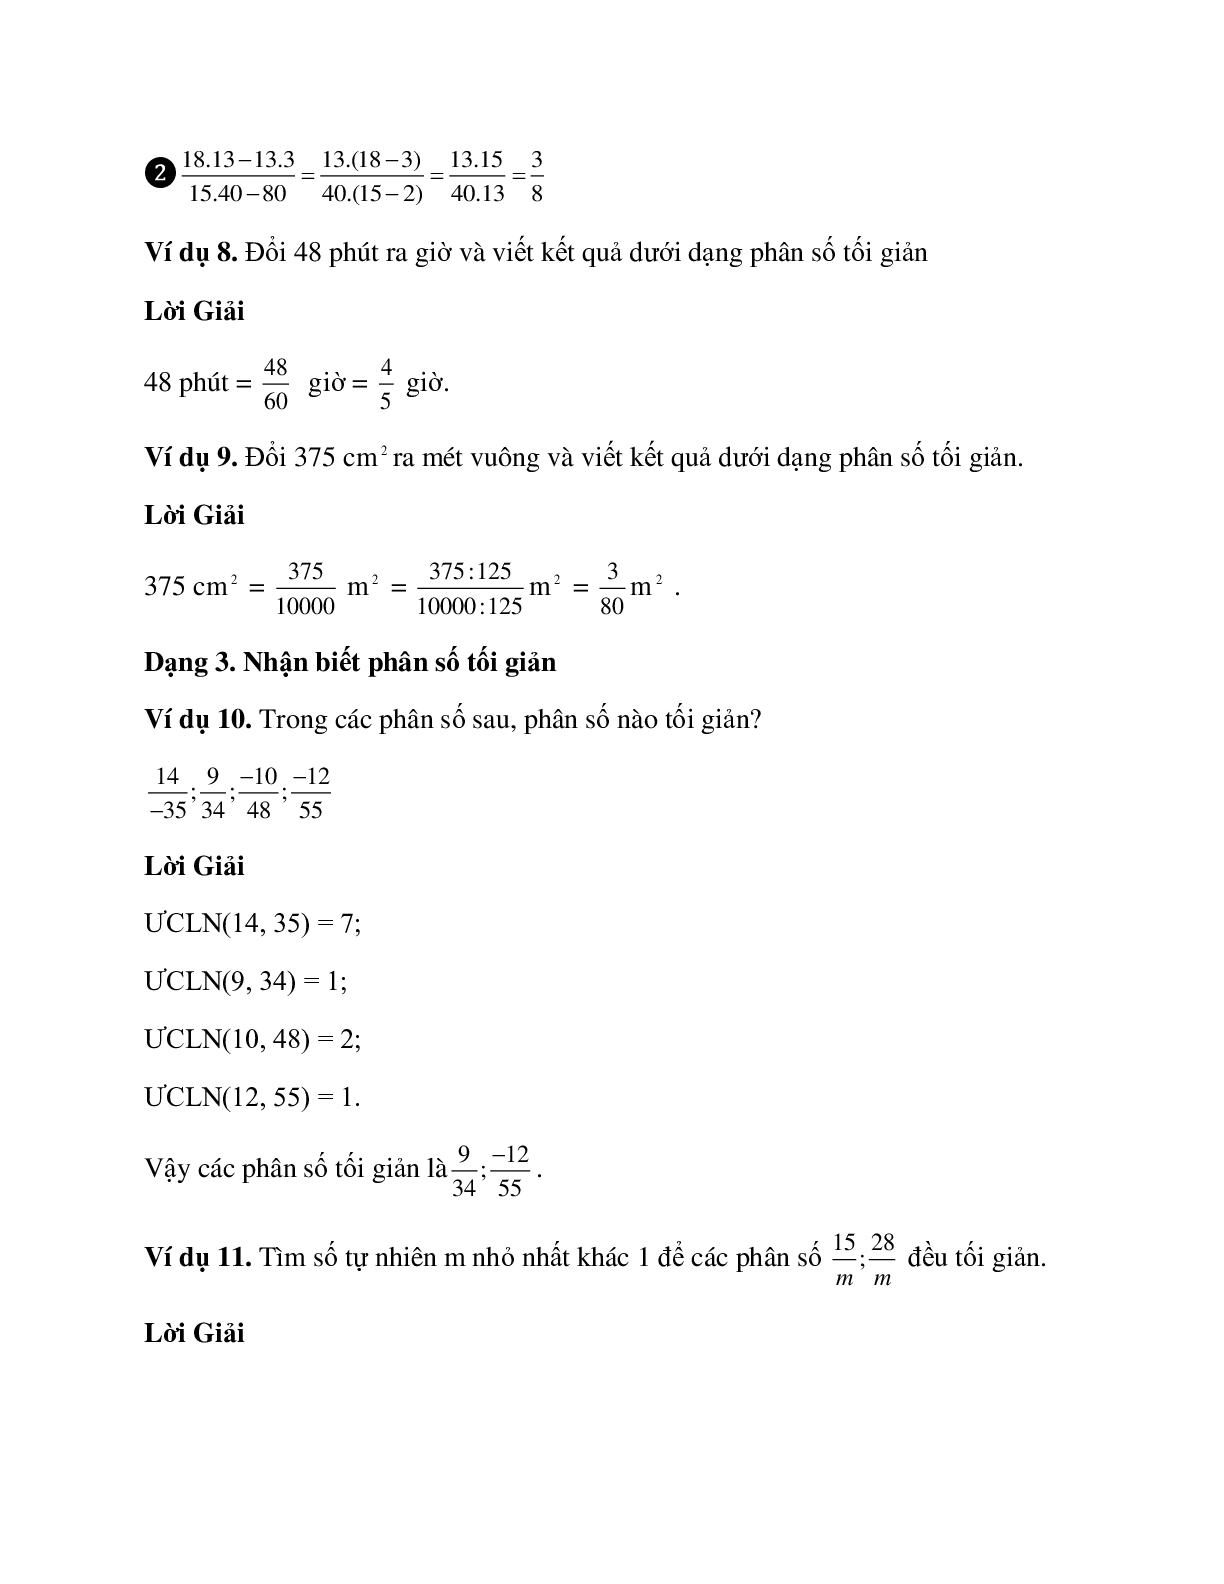 Hệ thống bài tập về tính chất cơ bản của phân số có lời giải (trang 4)